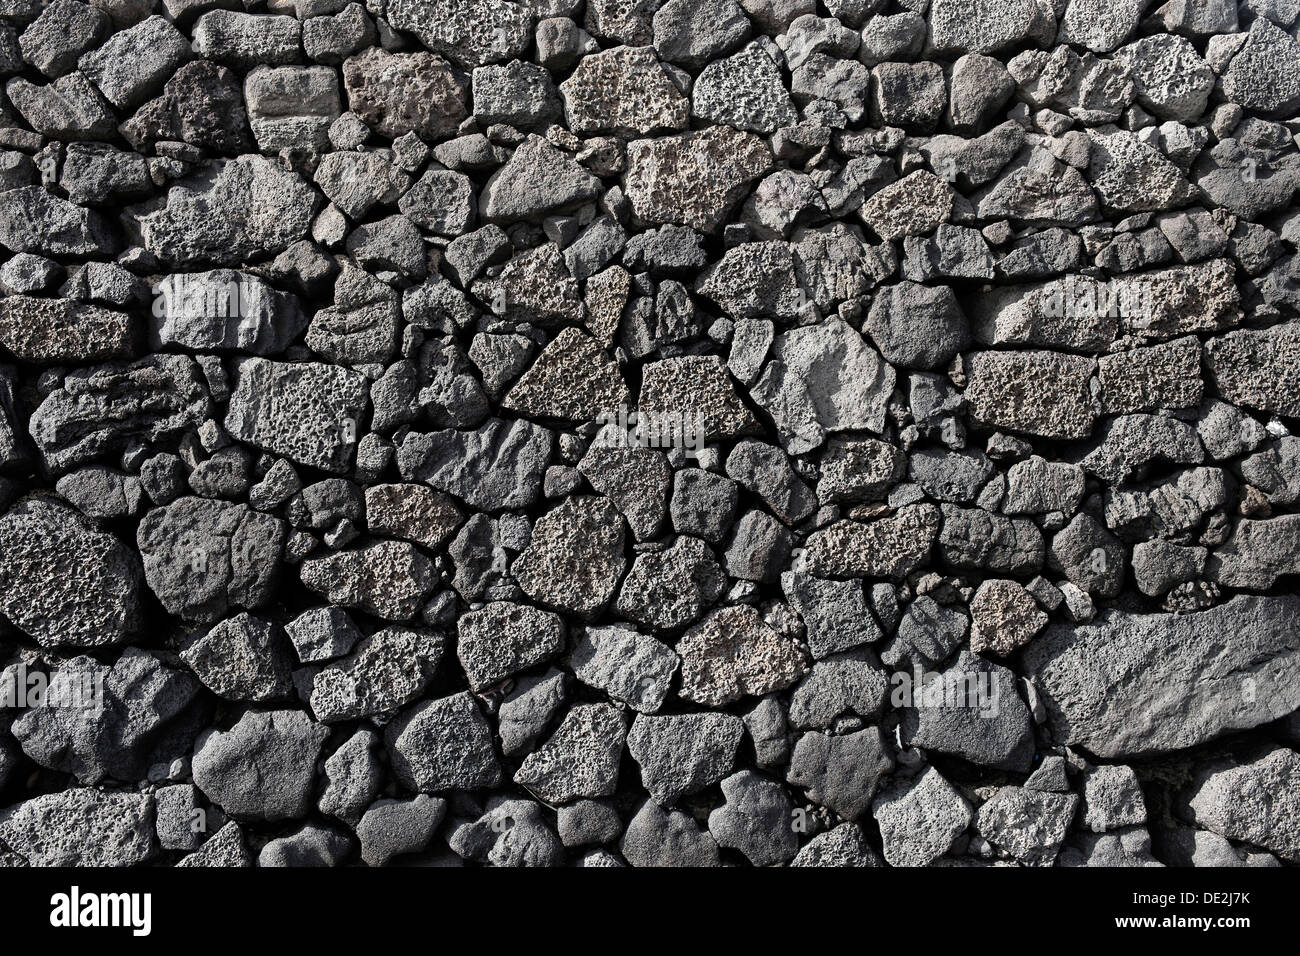 Un mur sec construit à partir de pierres de lave superposés individuellement, caractéristique typique de Lanzarote, Lanzarote, îles Canaries, Espagne Banque D'Images